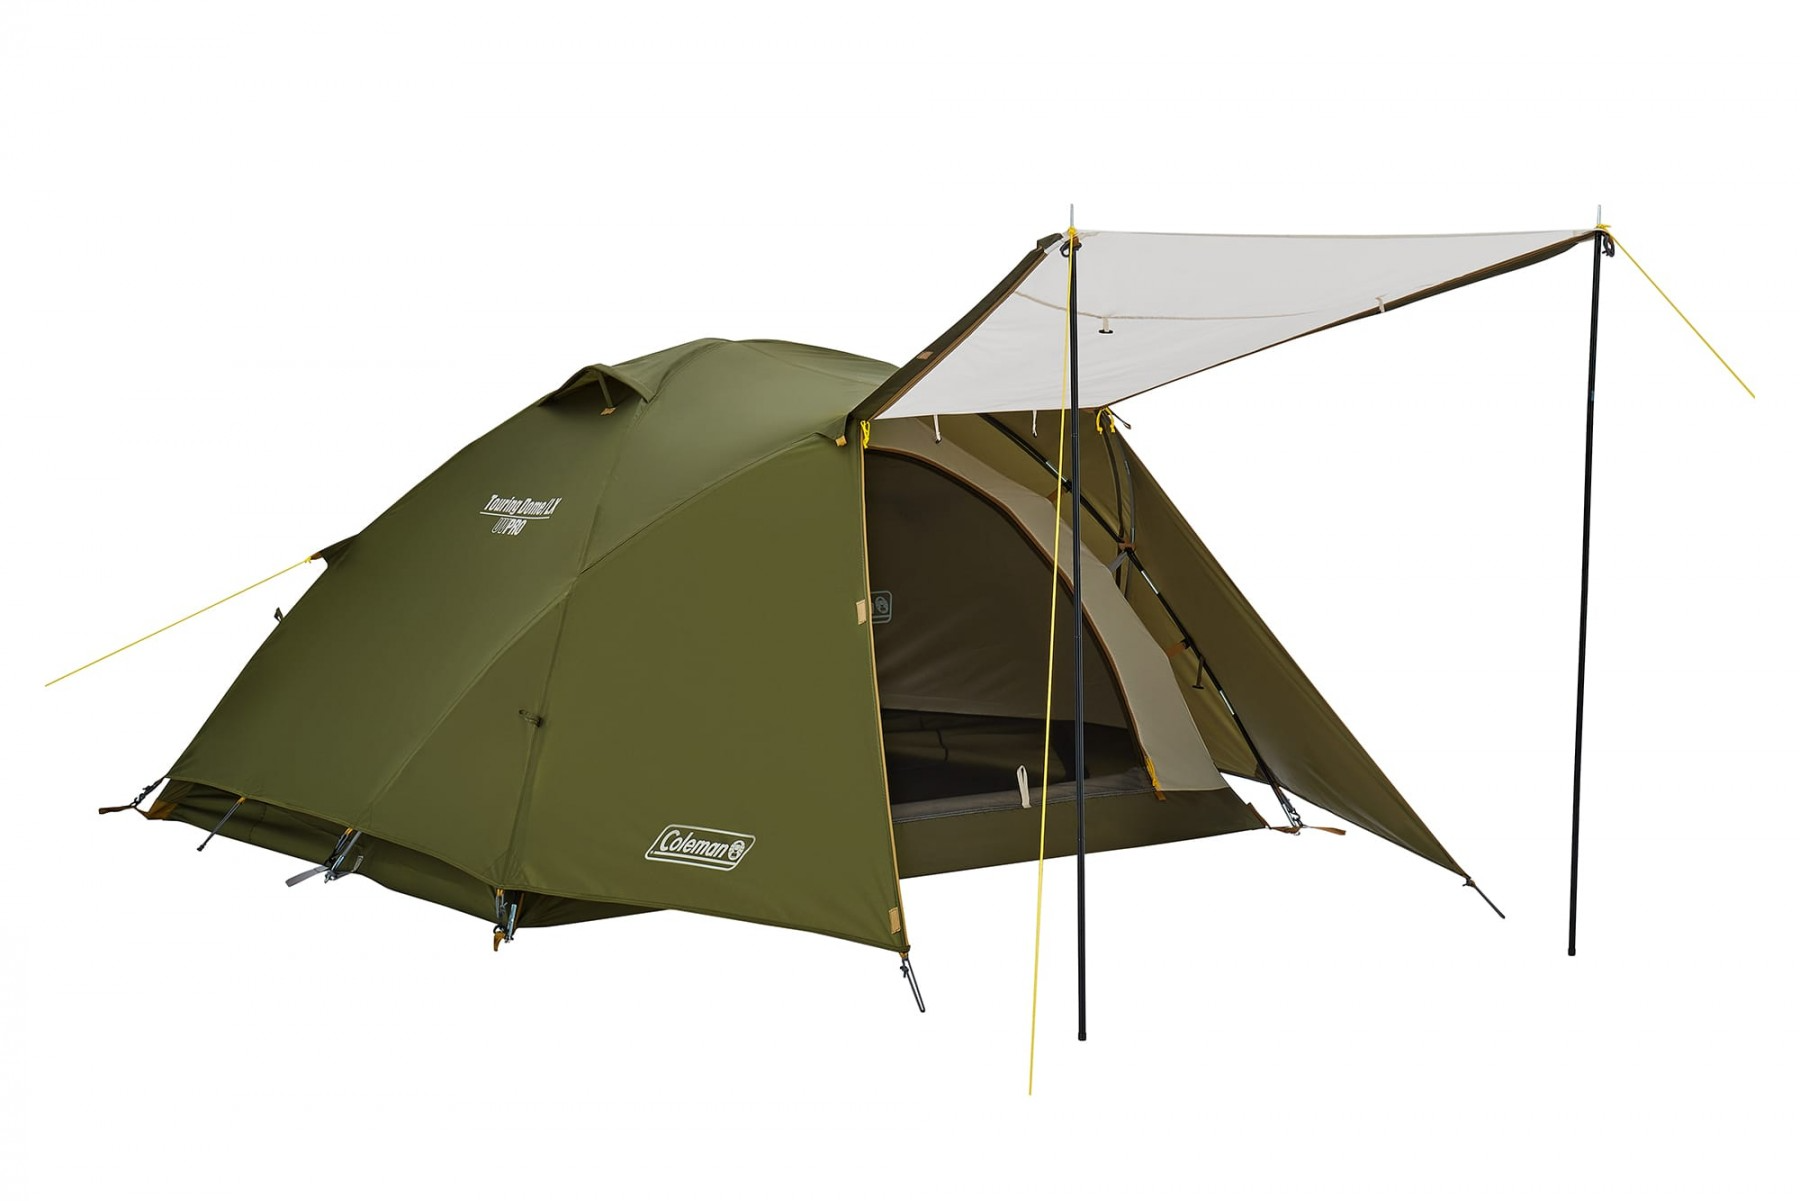  Lều cắm trại 3 người Touring Dome Coleman 2000038142 (4879) 